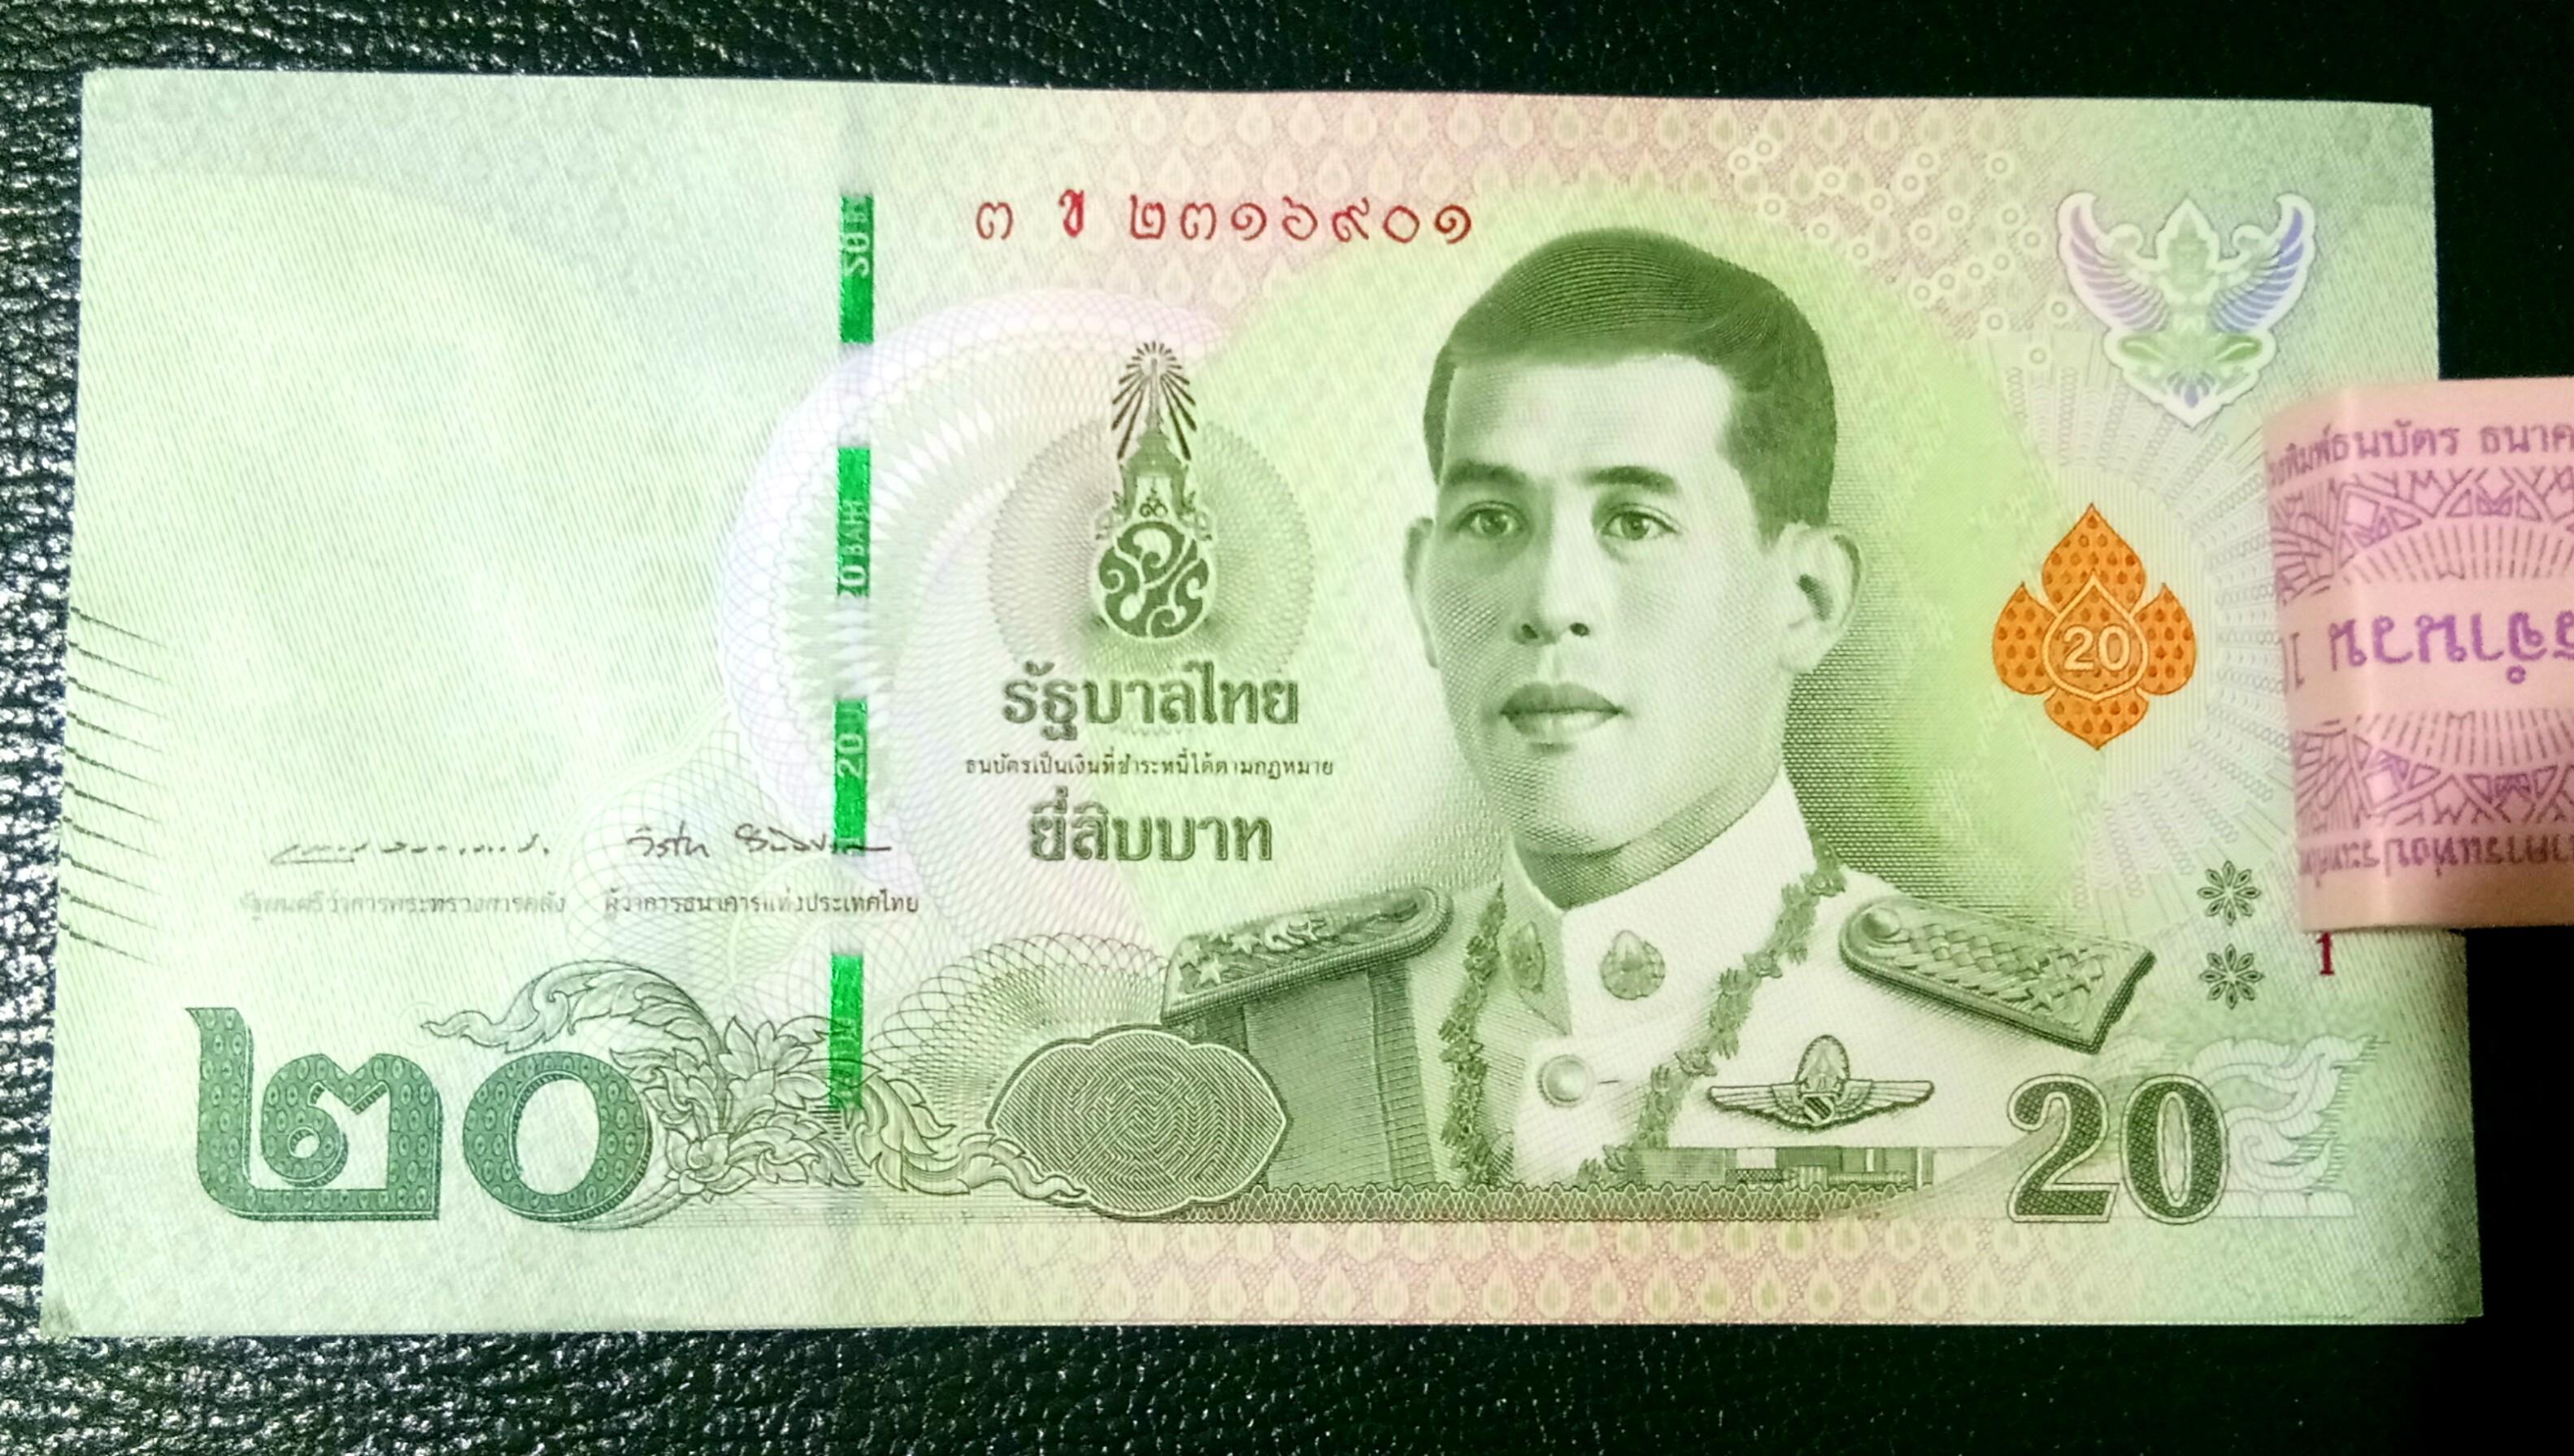 Thailand mata wang Thailand